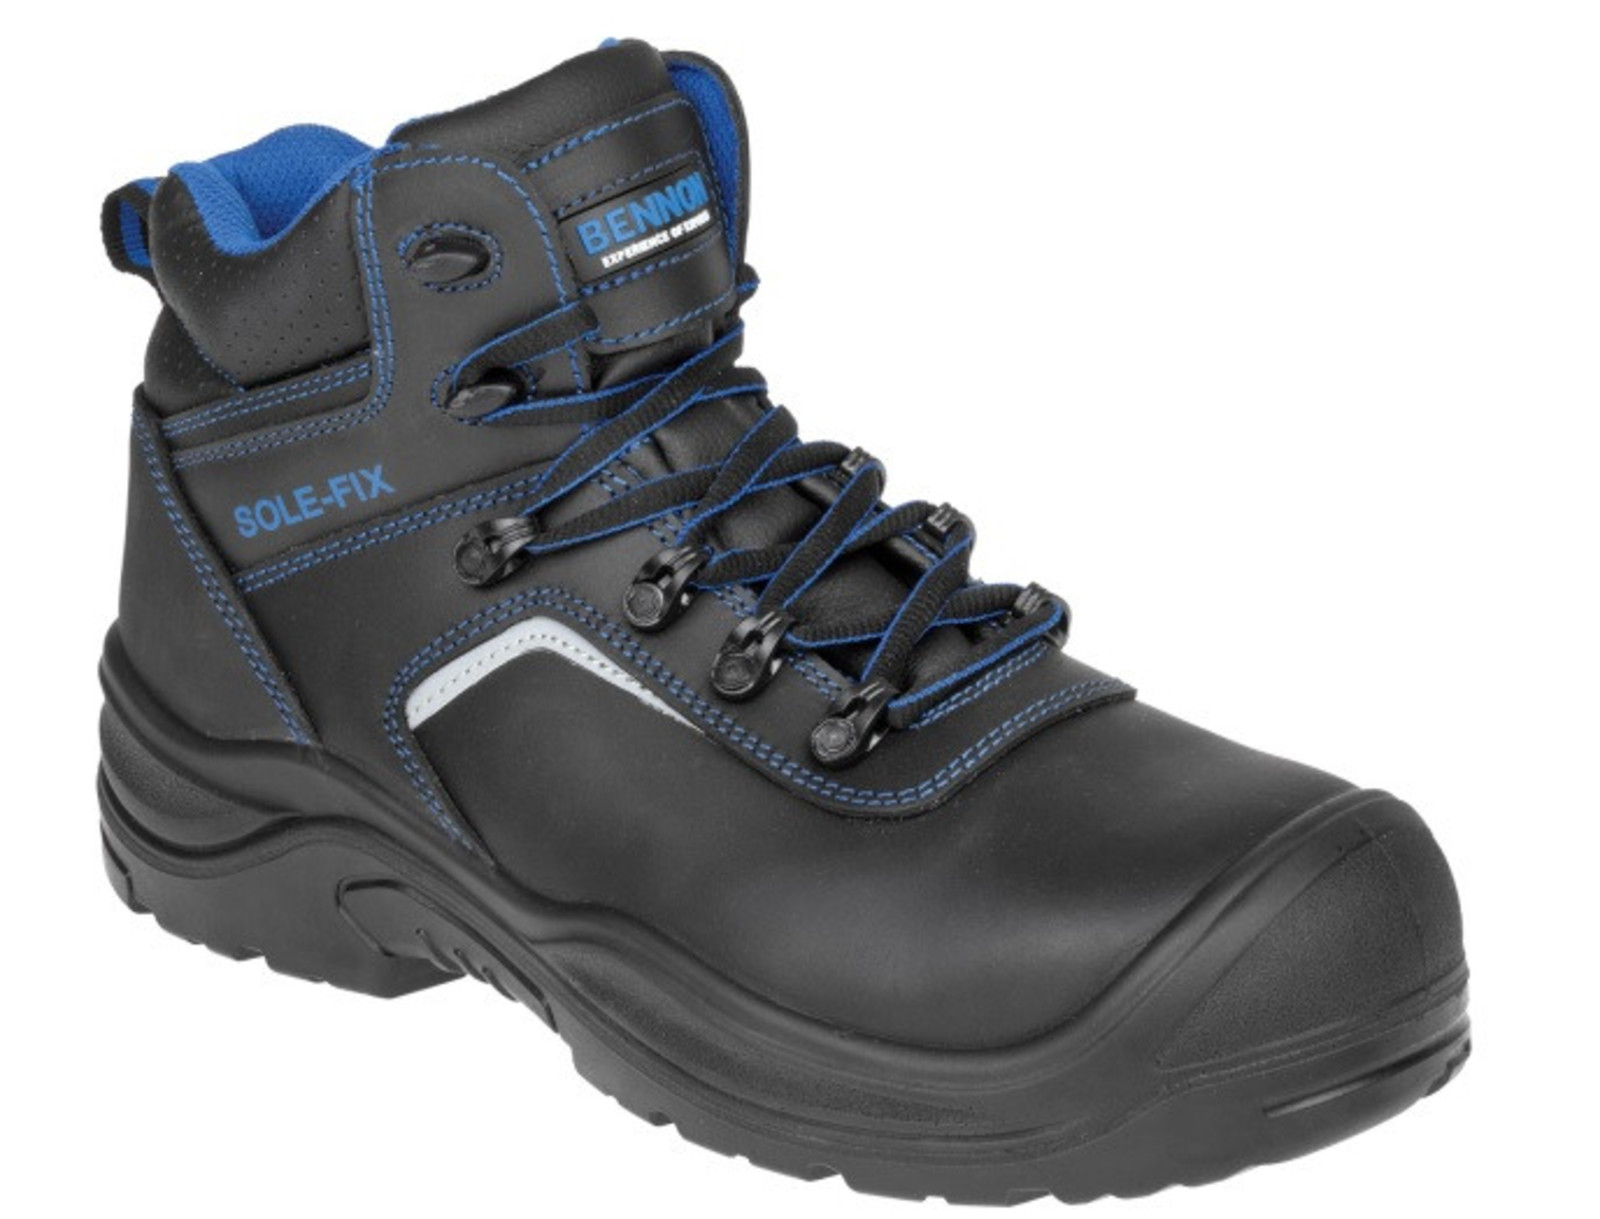 Bezpečnostná obuv Bennon Raptor S3 - veľkosť: 37, farba: čierna/modrá